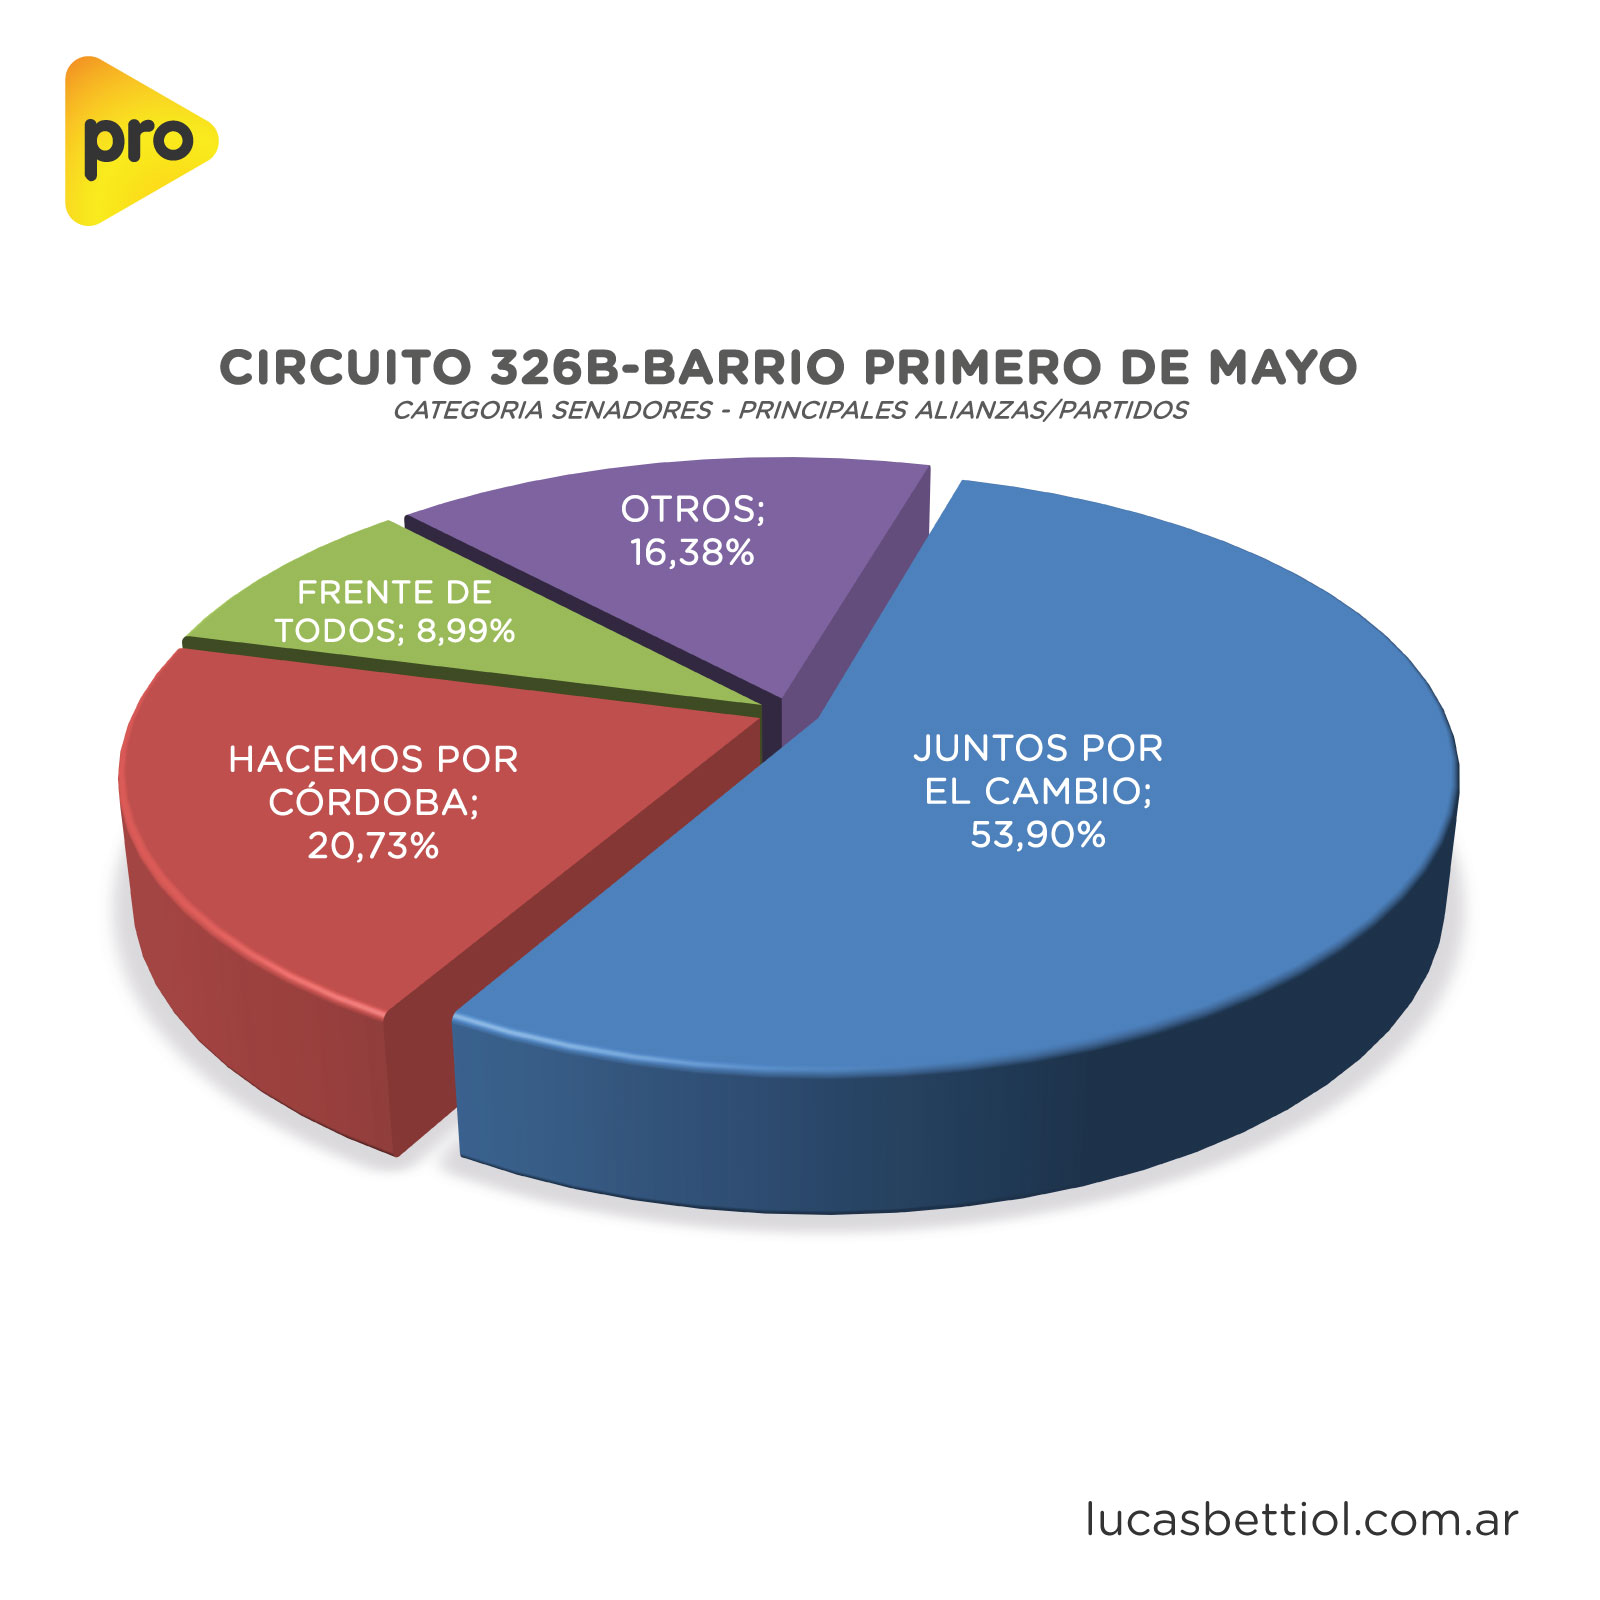 Elecciones PASO 2021 - Categoría Senadores - Gráfica de porcentuales que obtuvieron en el circuito 326B-Barrio Primero de Mayo las principales alianzas